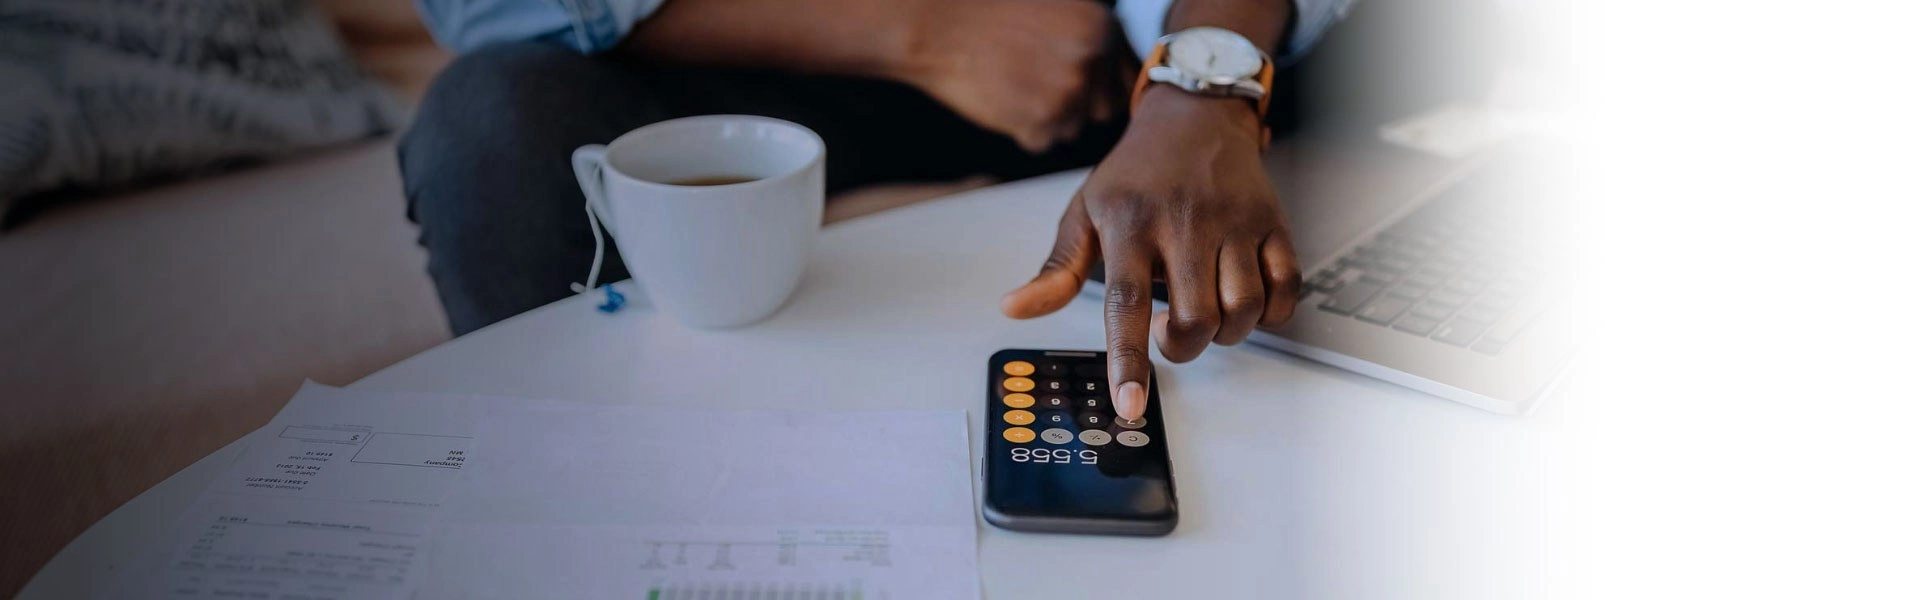 Mão de homem negro usando a calculadora no celular que está em cima de uma mesa branca com uma xícara de chá do lado.